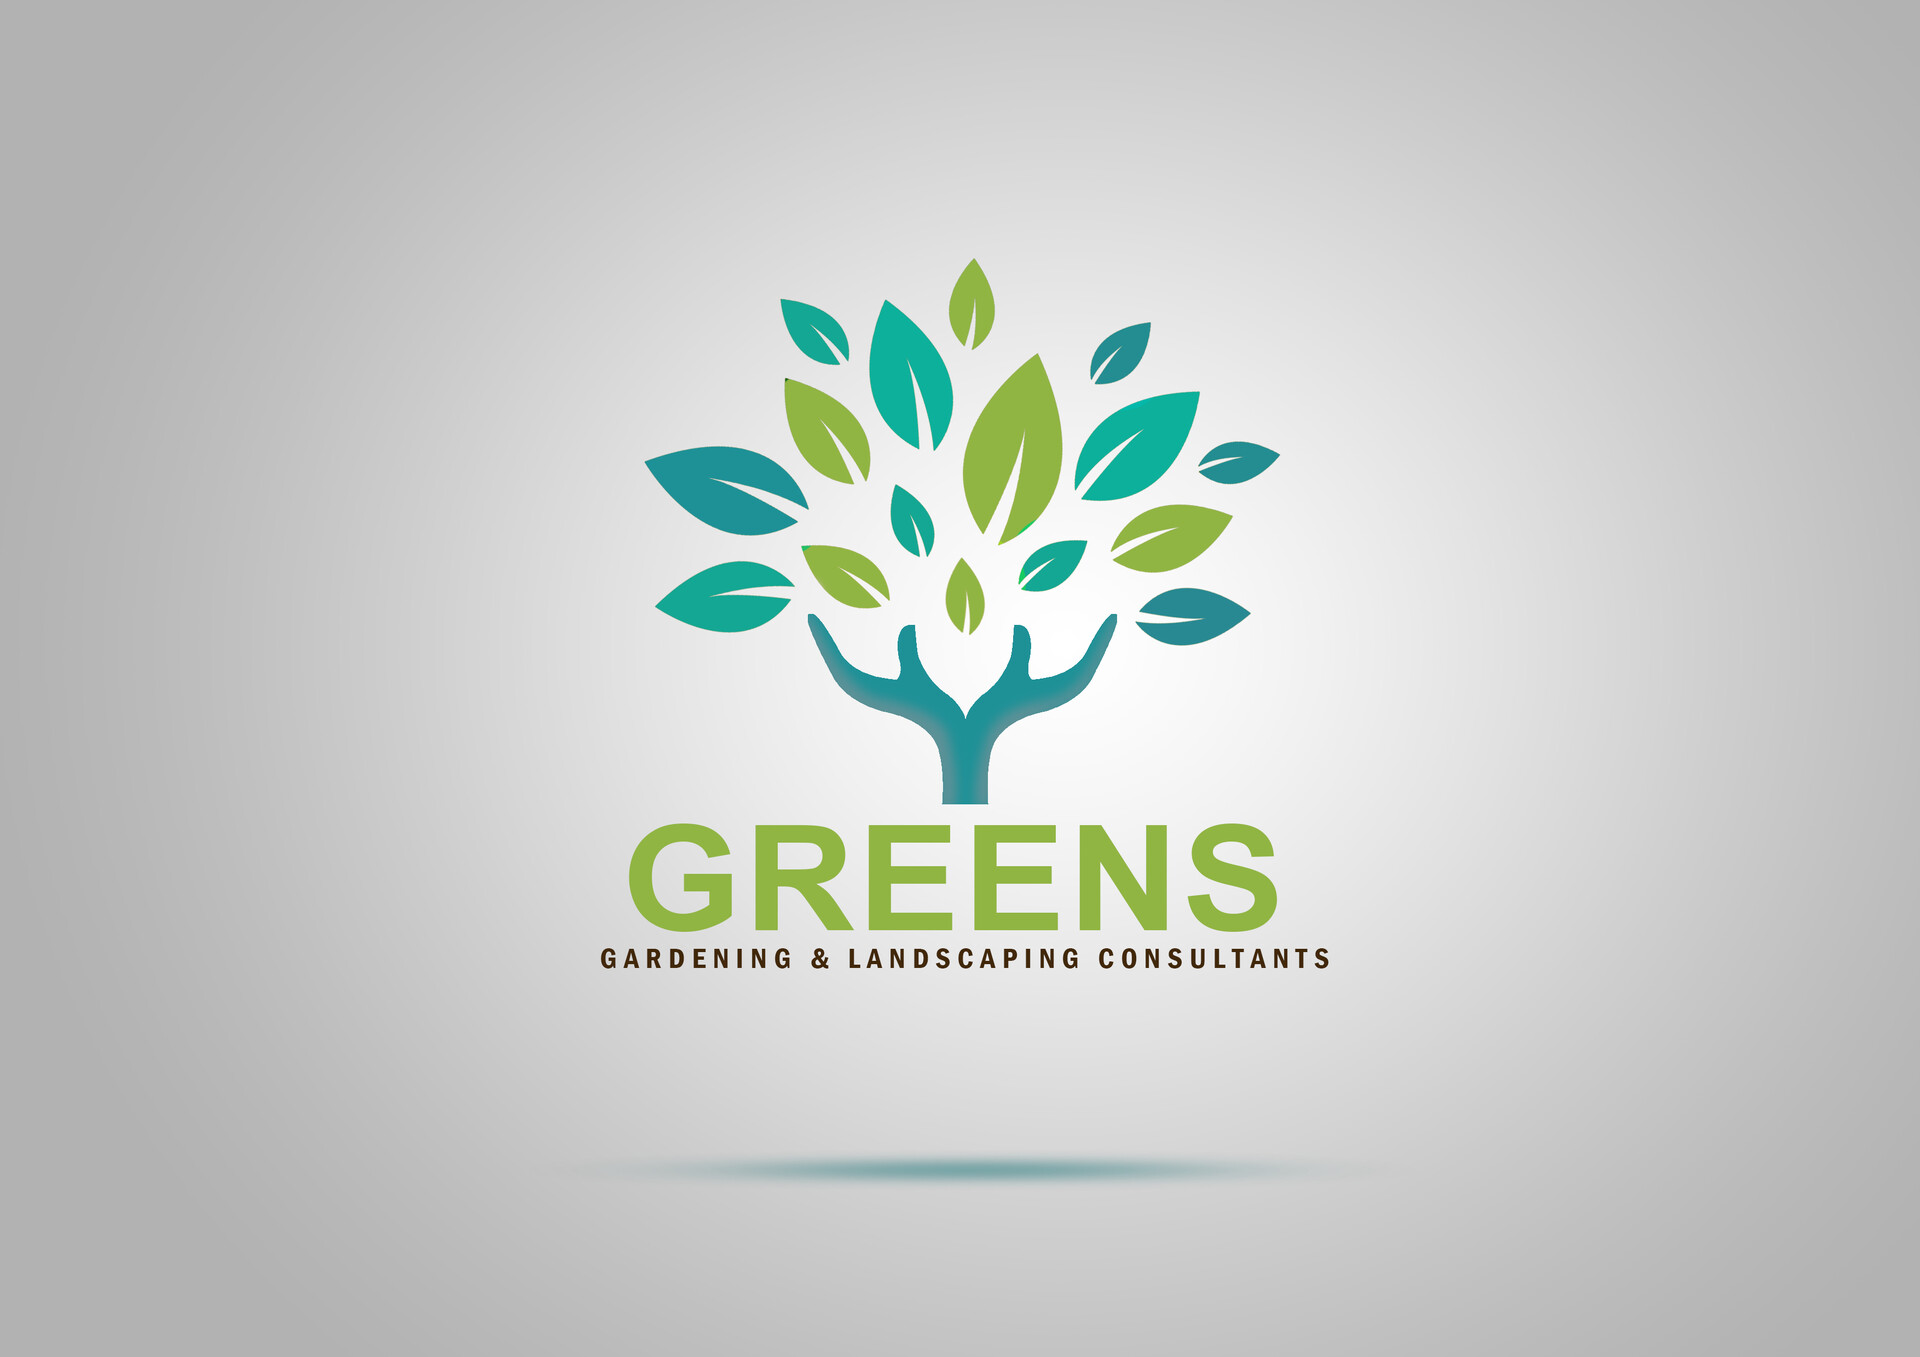 Gardener Logos - 122+ Best Gardener Logo Ideas. Free Gardener Logo Maker. |  99designs